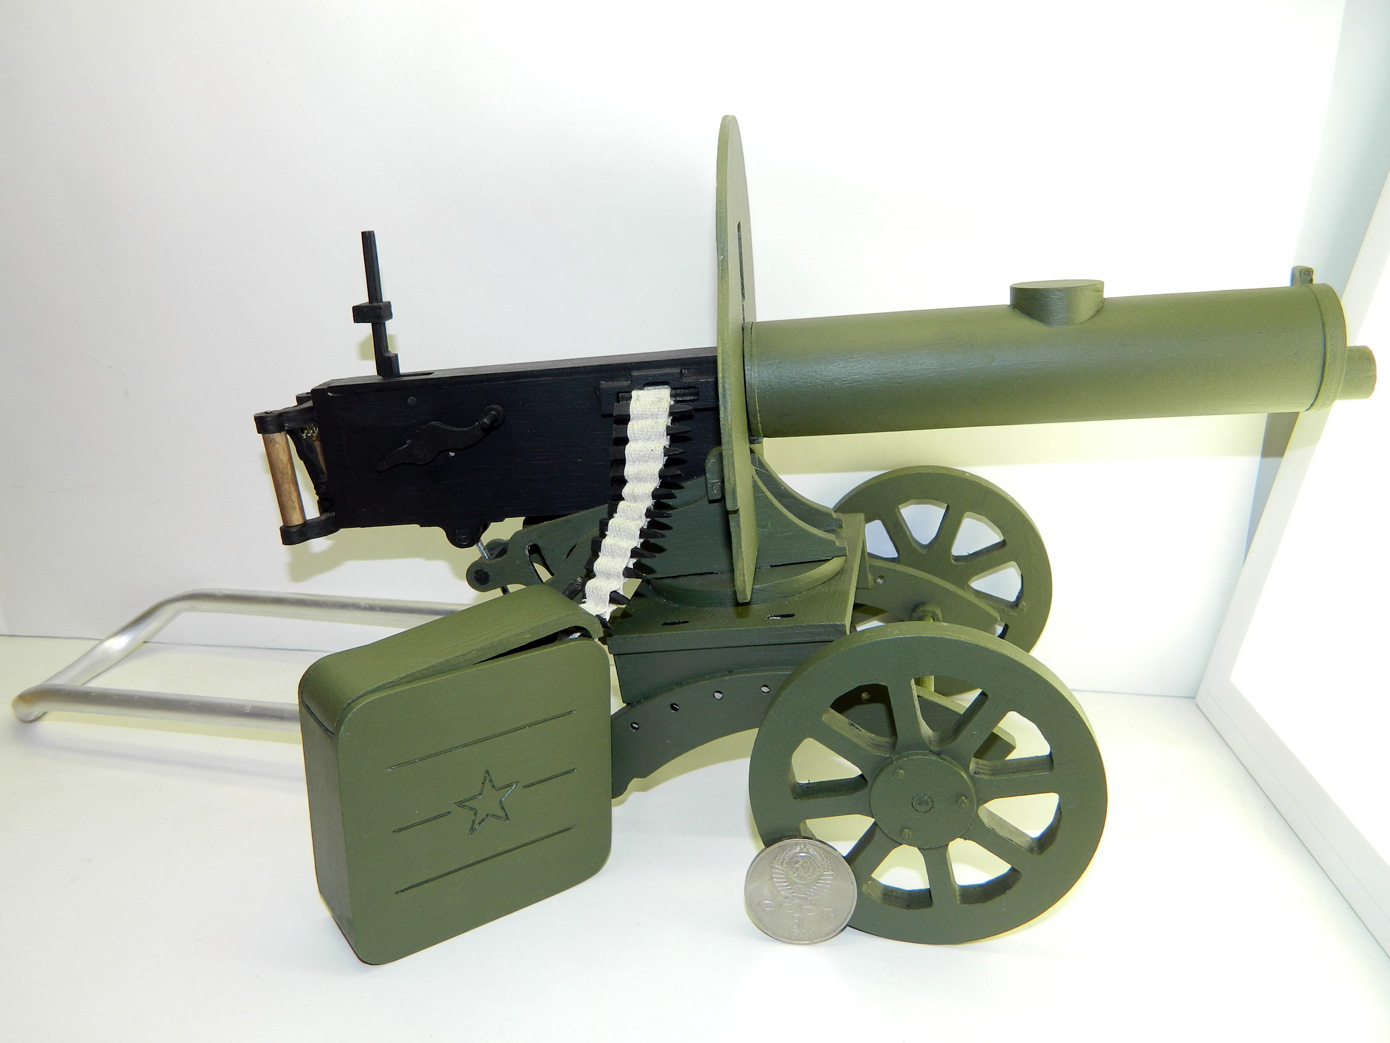 Самодельные масштабные модели стрелкового оружия - Страница 2 - Популярное оружие